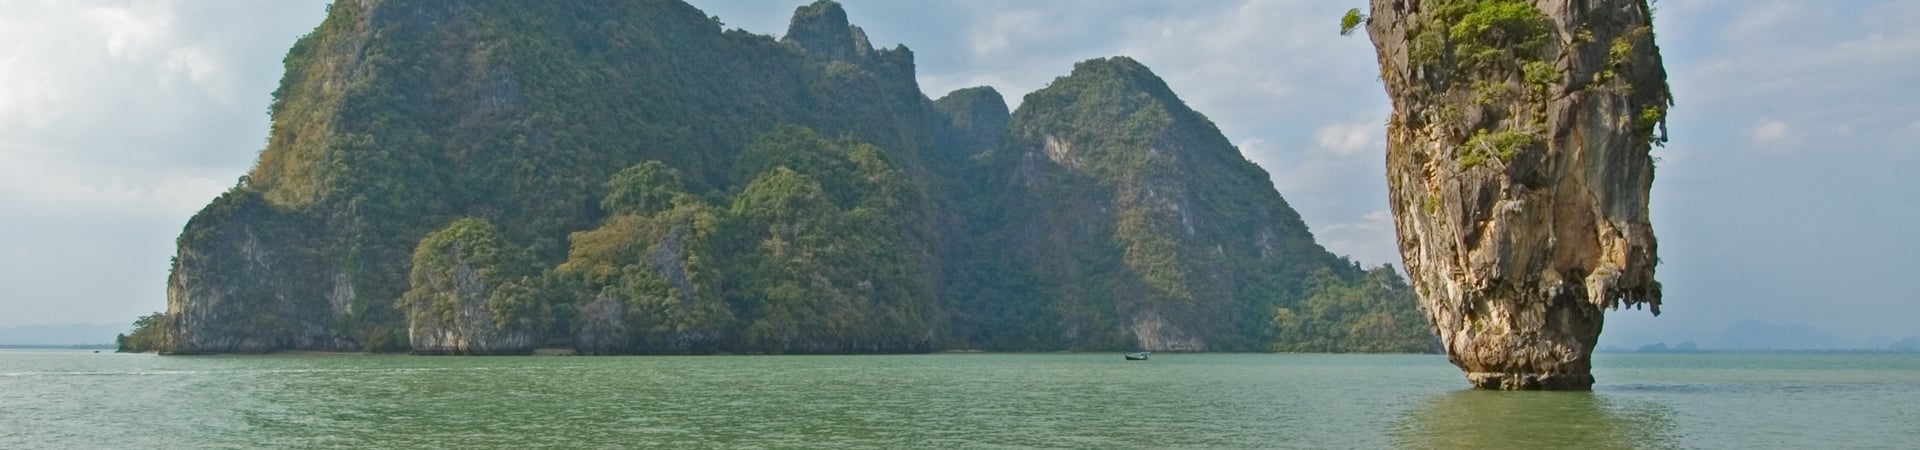 Image of Longtails & Limestone Islands of Phang Nga Bay (Phuket)